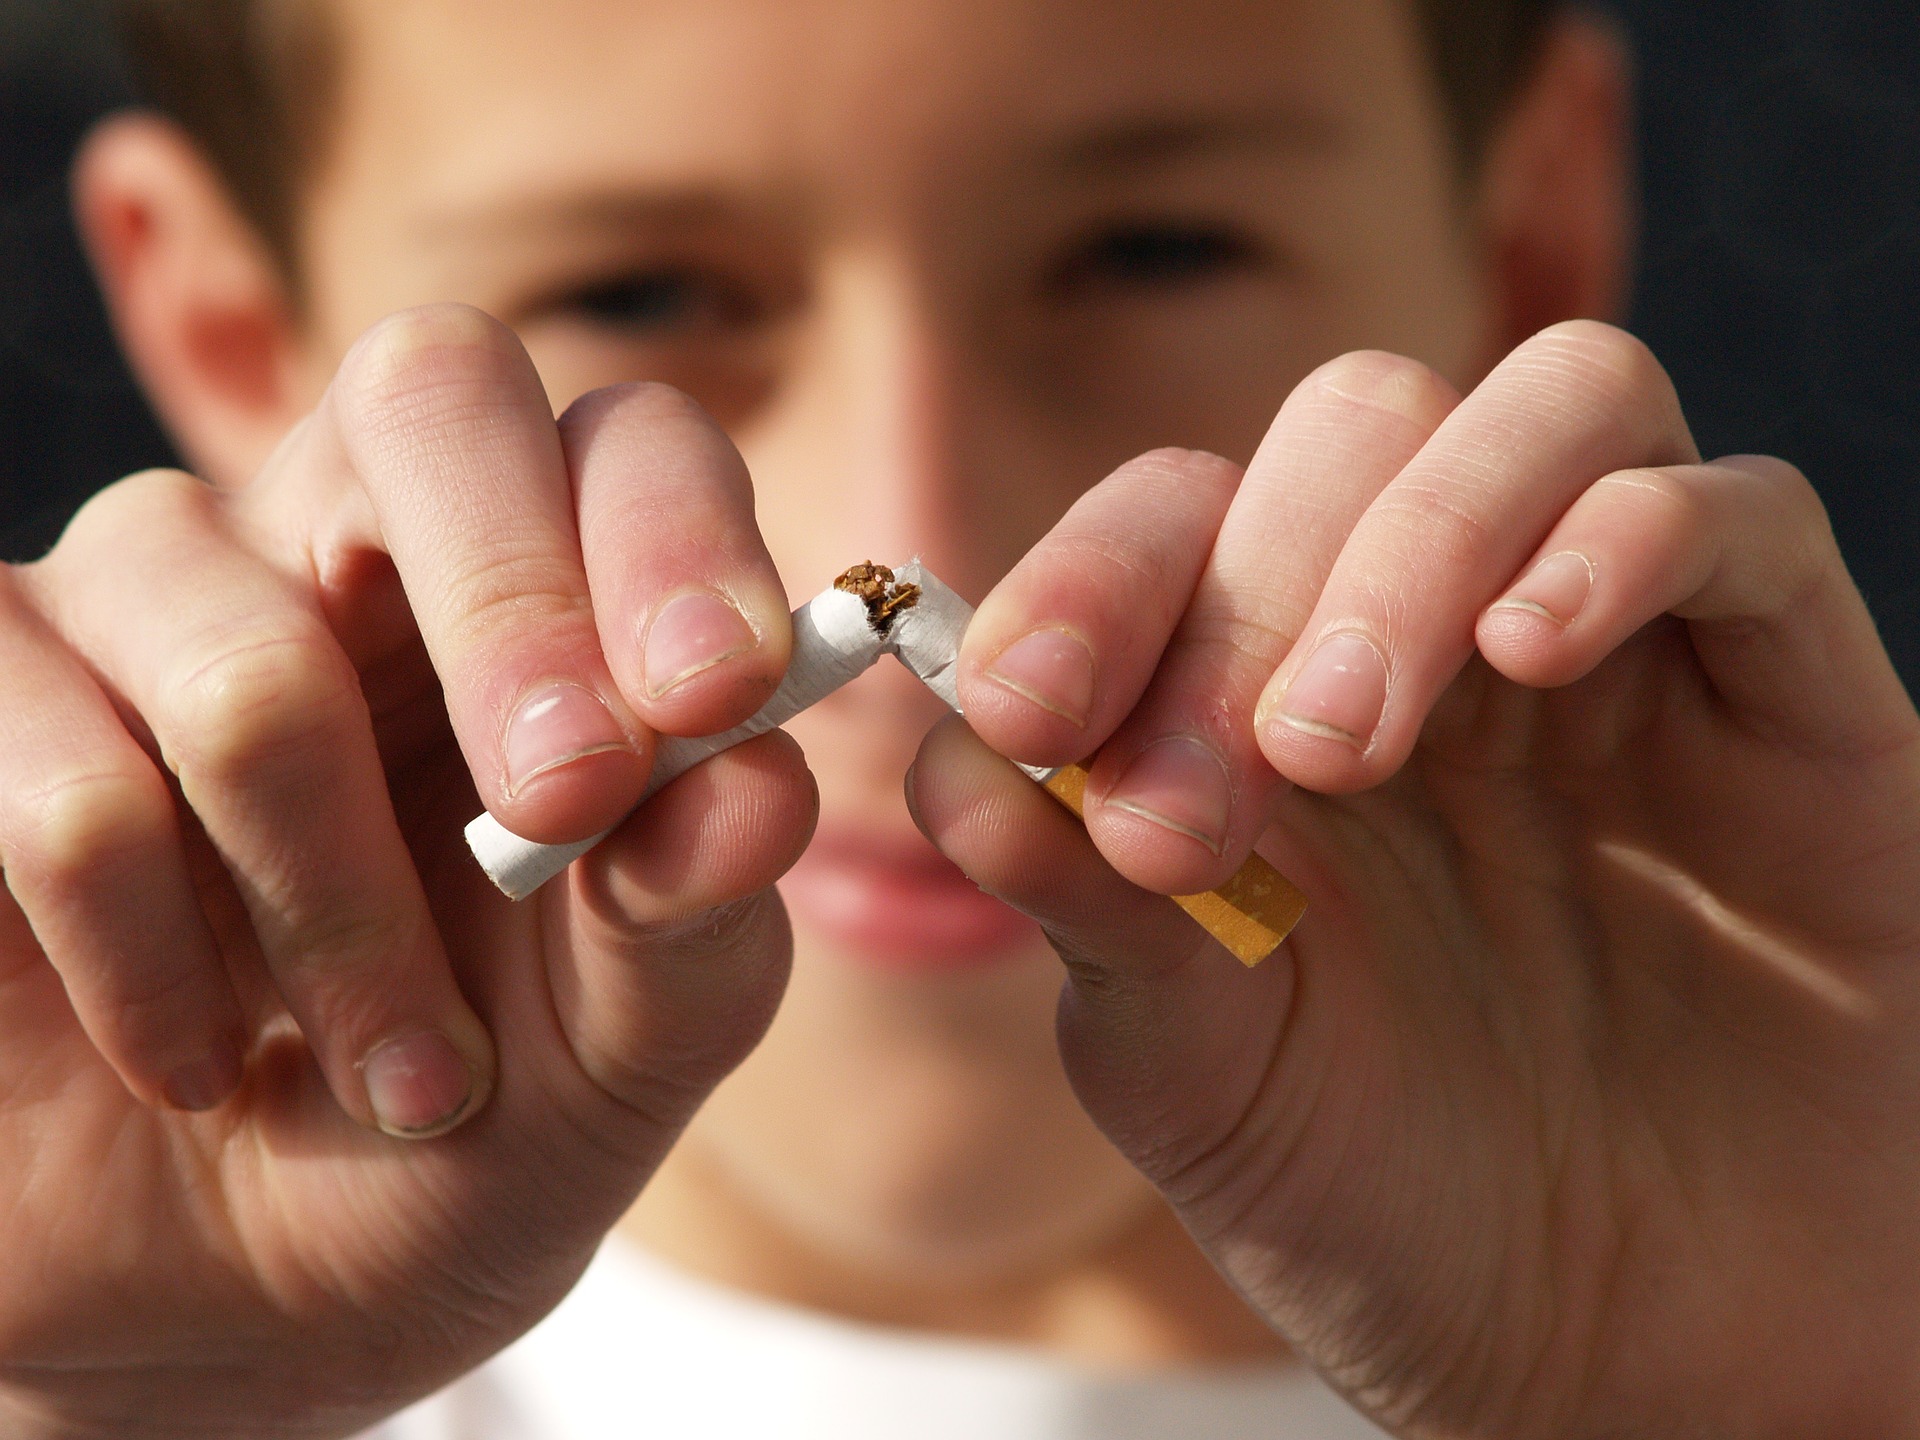 Se atribuye la guarda y custodia exclusiva a un progenitor por la adicción al tabaco del otro por encima de la salud de los hijos